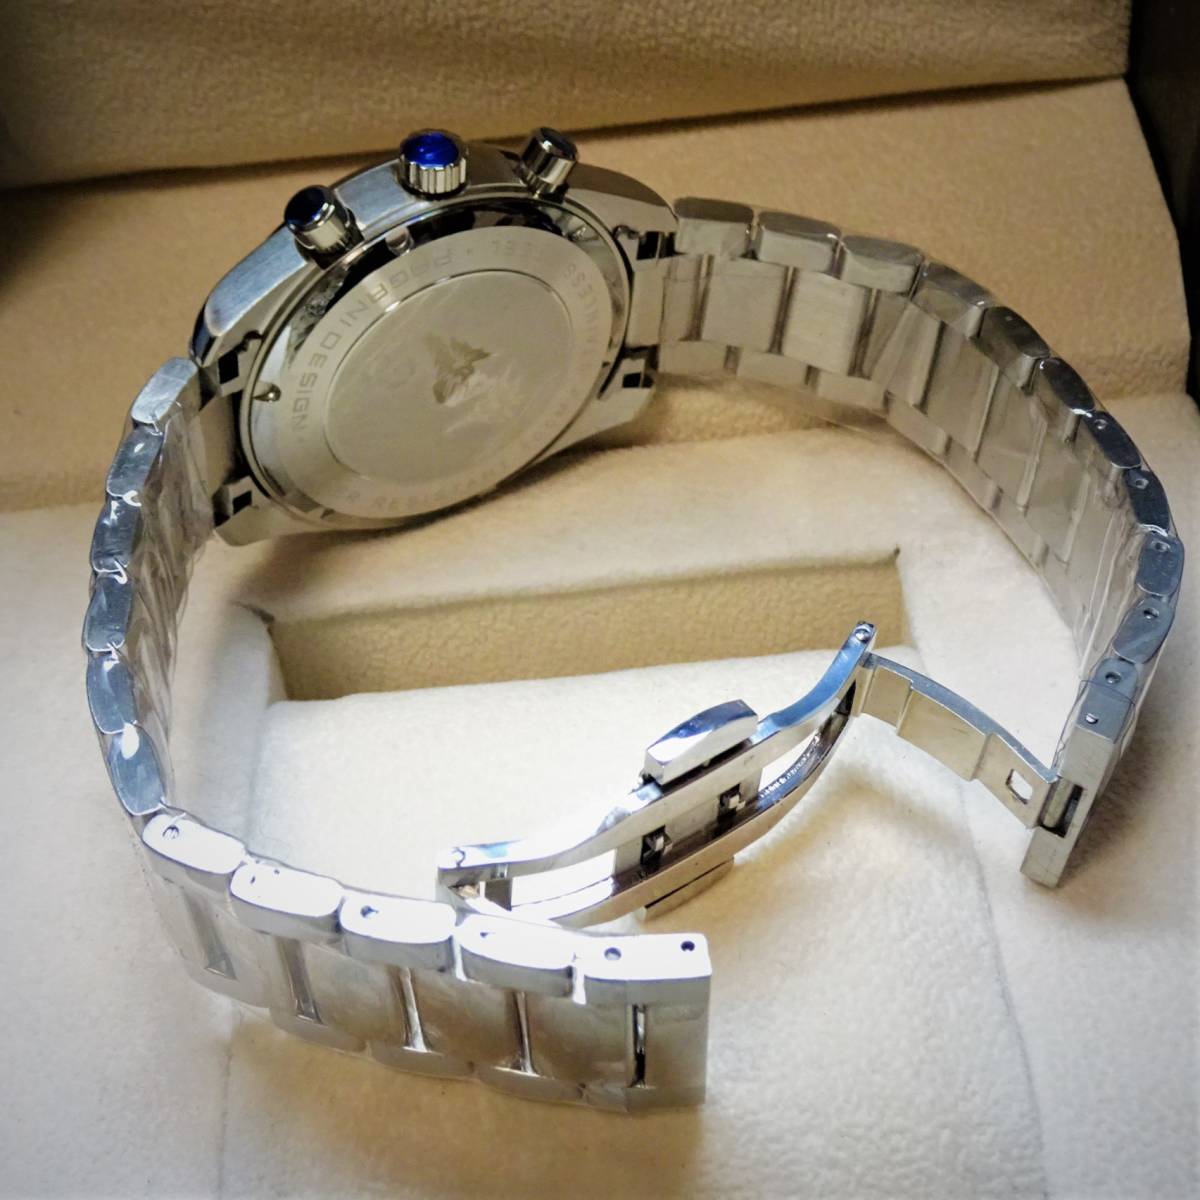 1円〓新品〓メンズクオーツ式腕時計セイコー製VK63ムーブメント搭載オマージュウオッチPAGANI DESIGN〓ブラックPD-1712_画像5